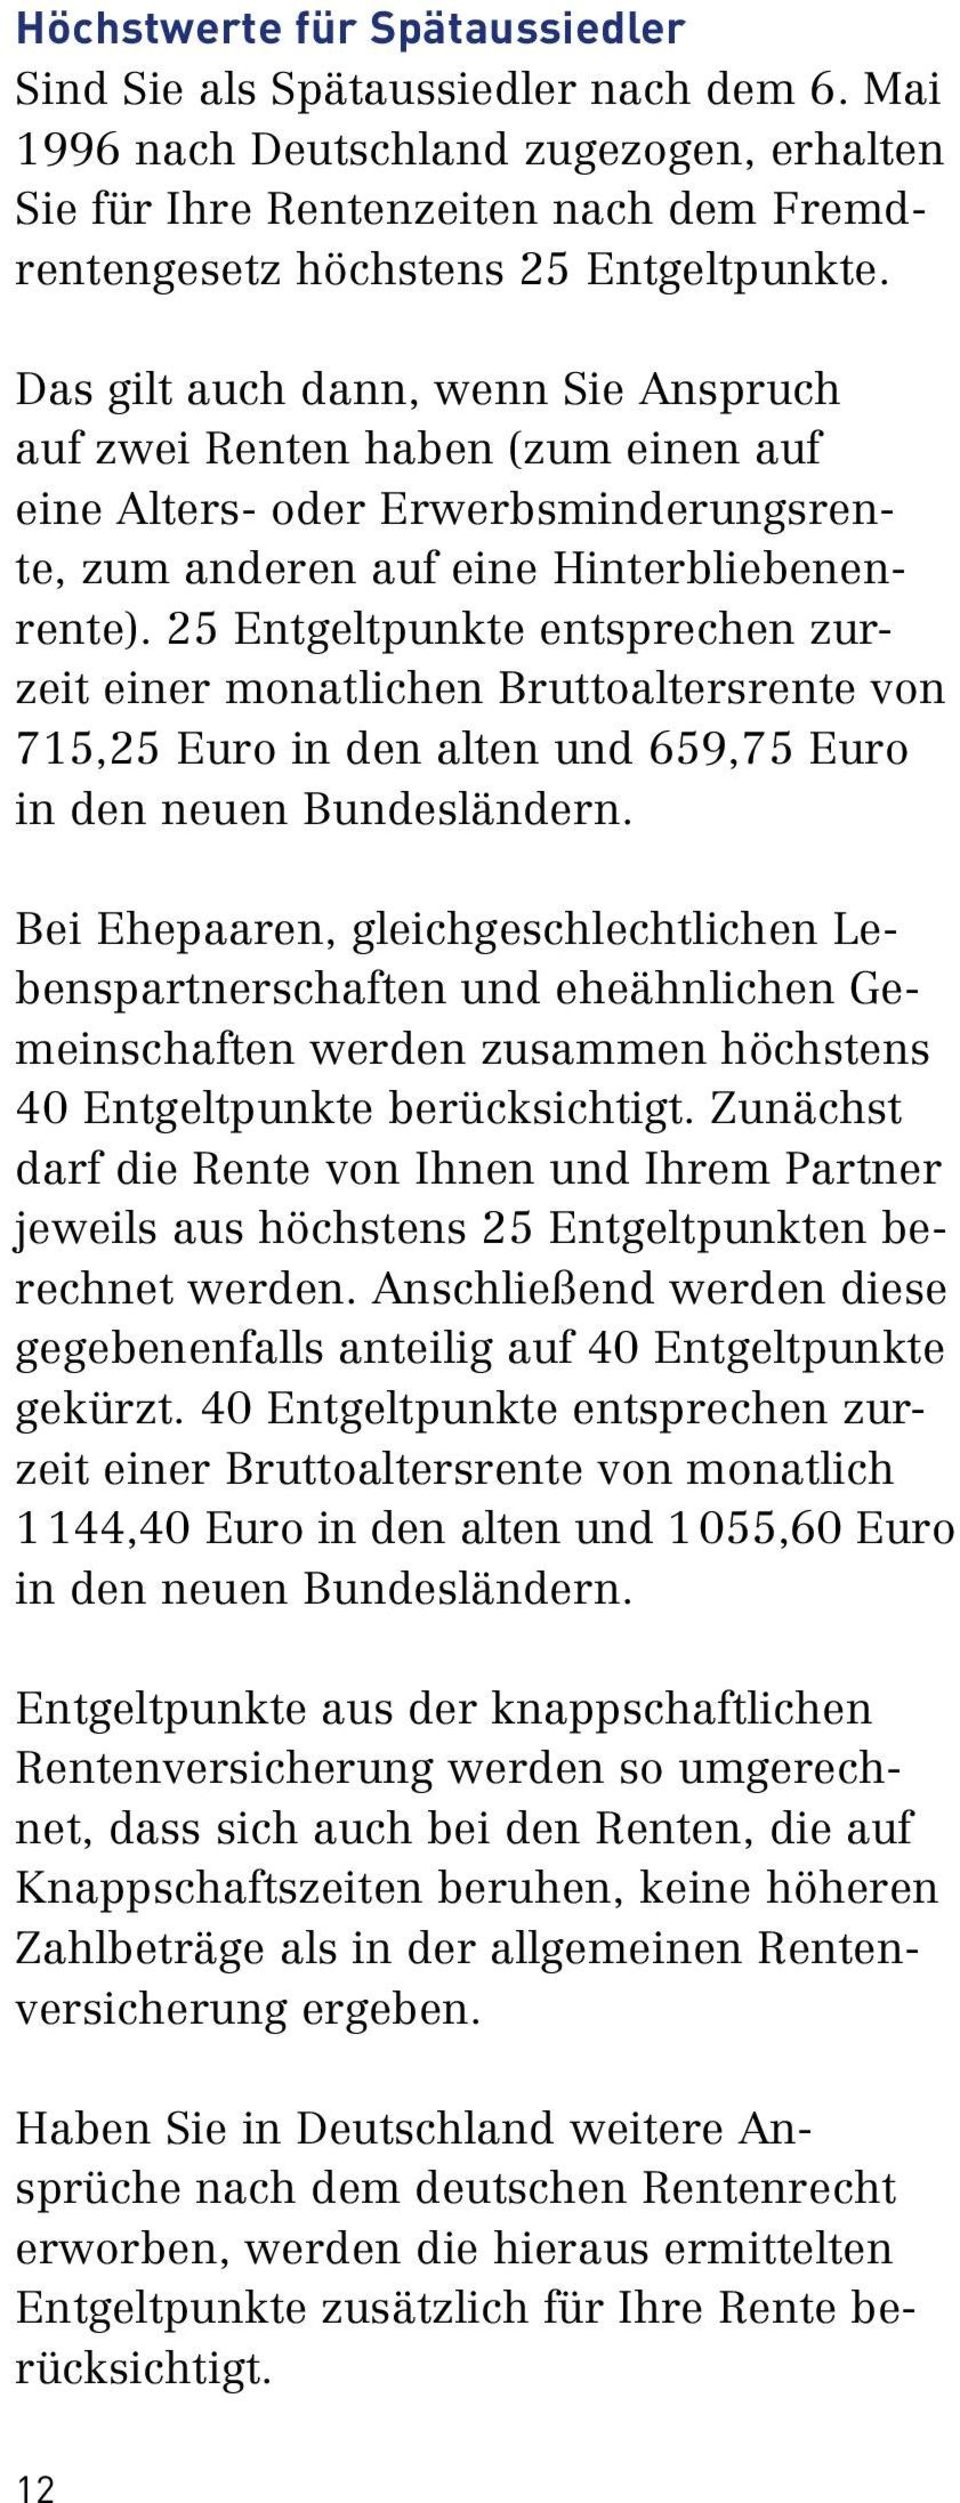 25 Entgeltpunkte entsprechen zur zeit einer monatlichen Bruttoaltersrente von 715,25 Euro in den alten und 659,75 Euro in den neuen Bundesländern.